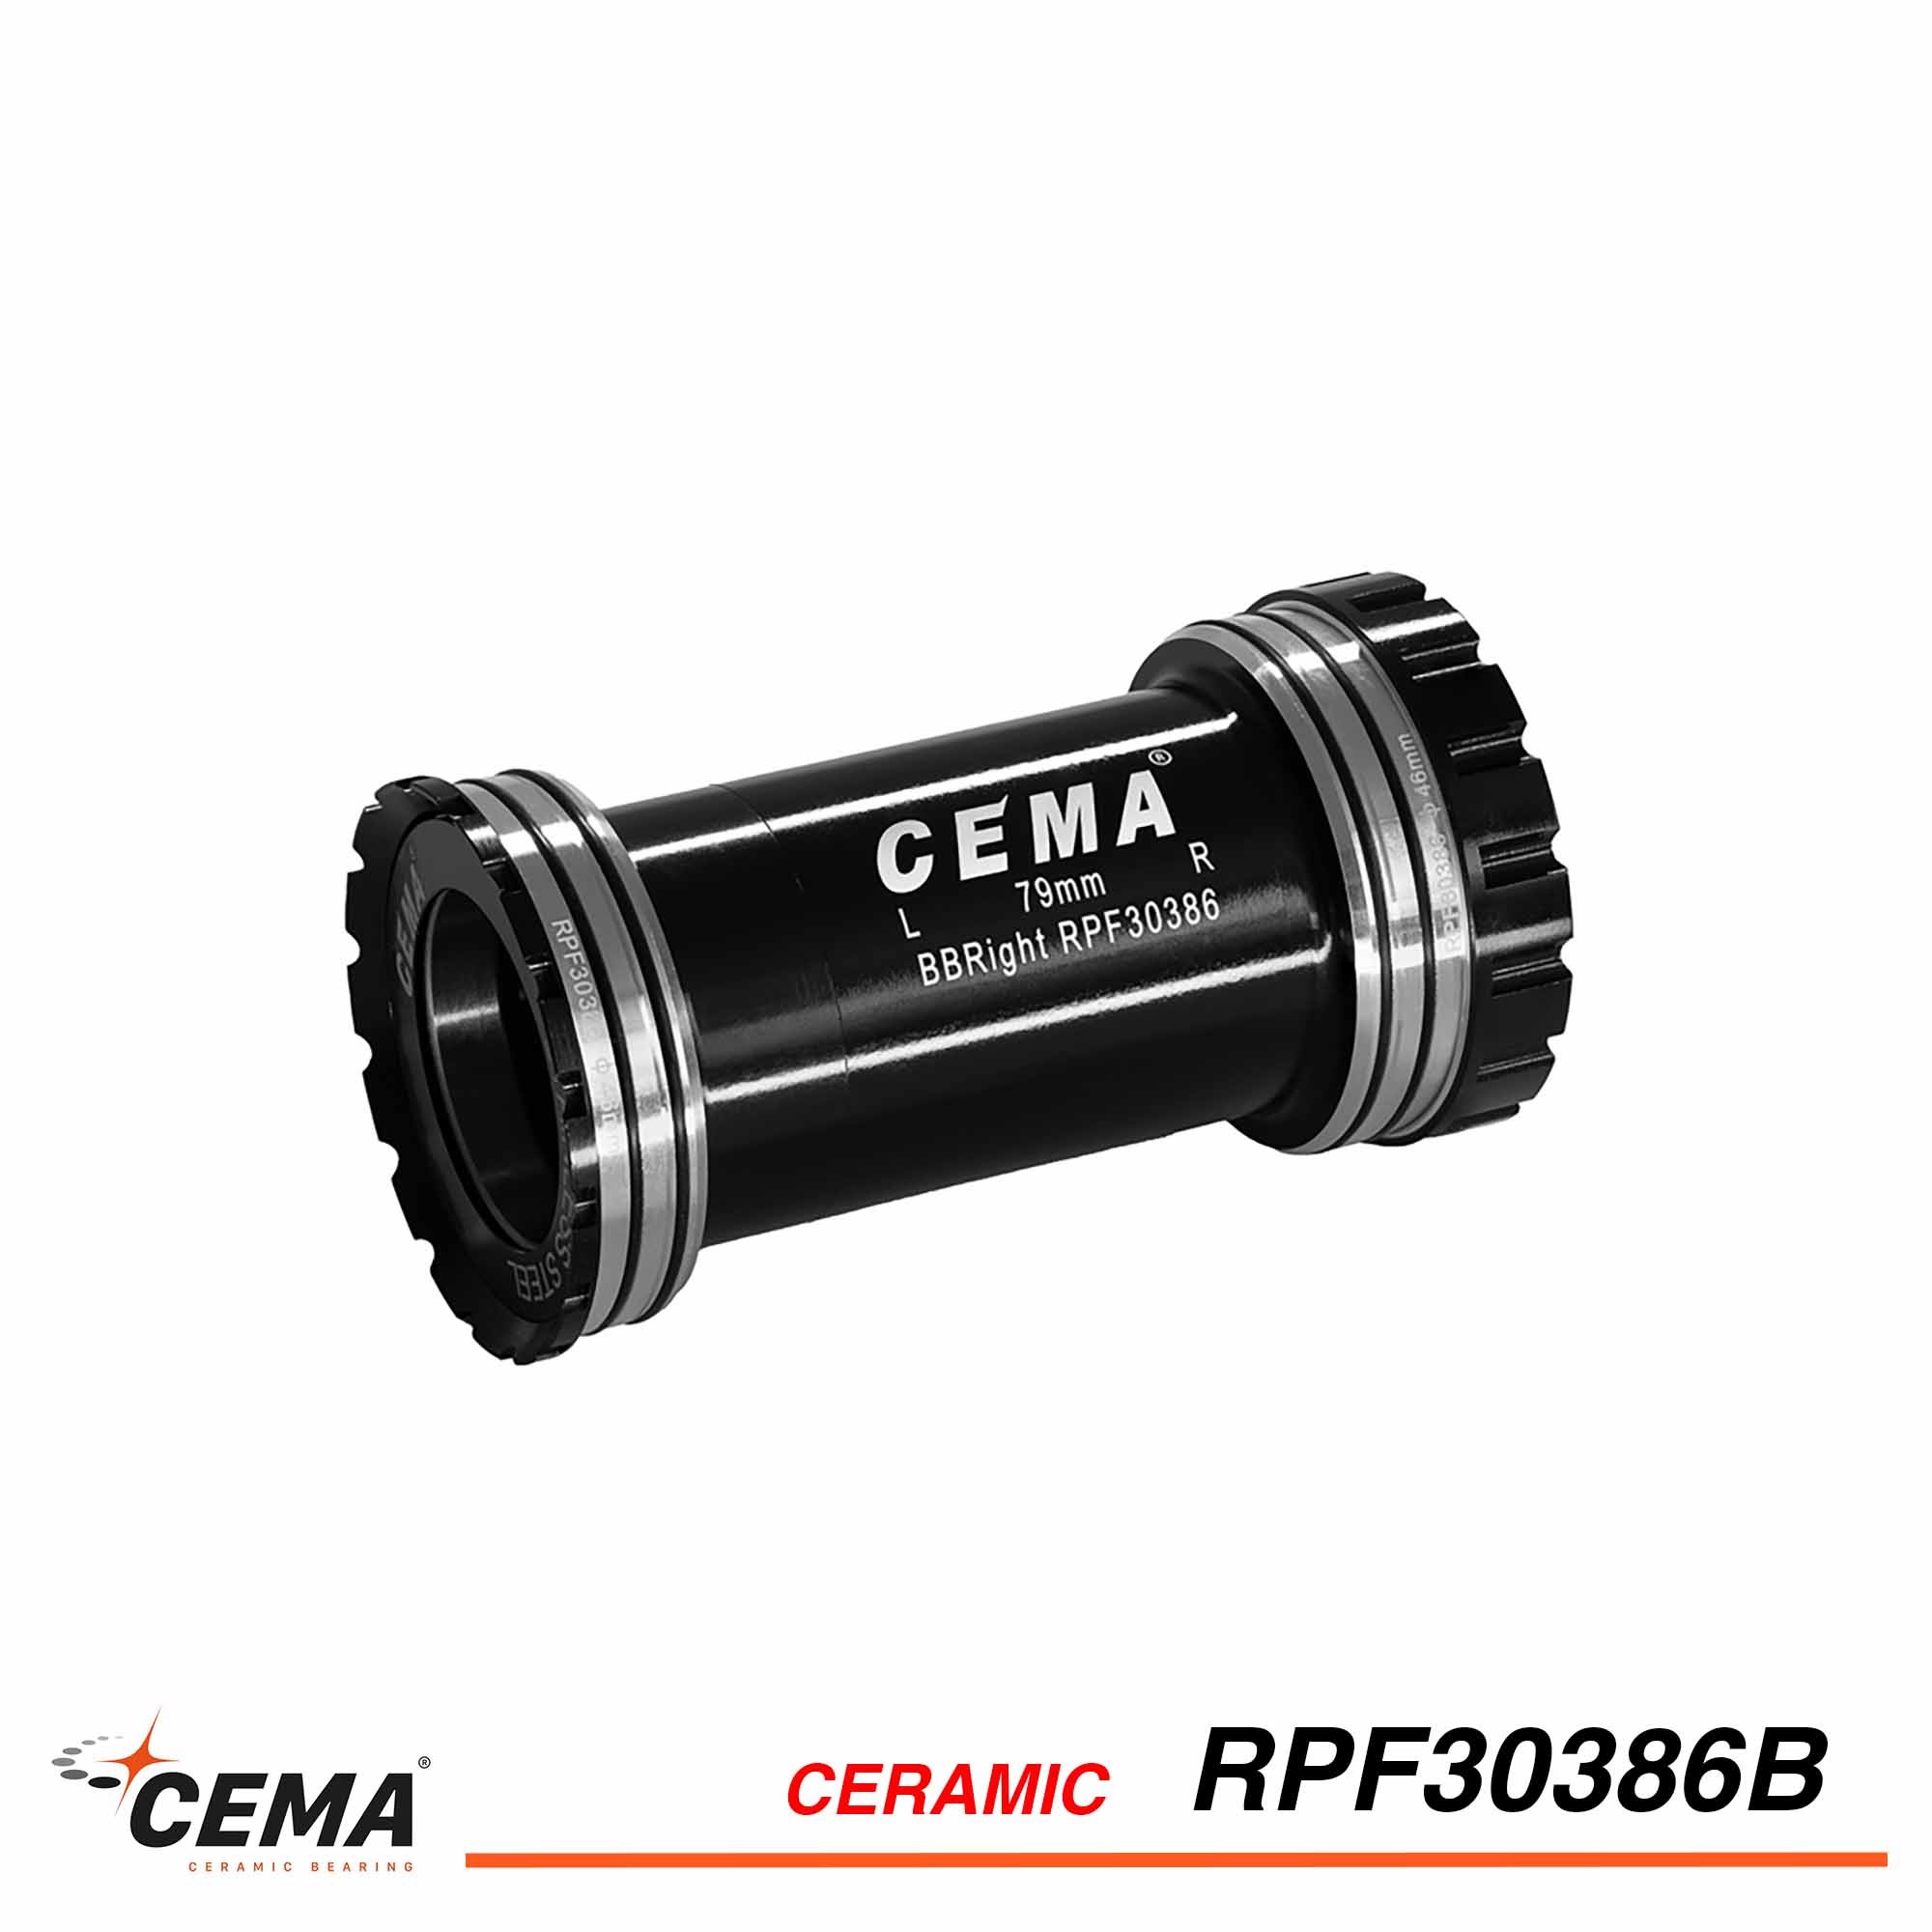 Boitier de pédalier CEMA Ceramique BBright46 pour FSA386/ROTOR 30mm sur Cervélo®